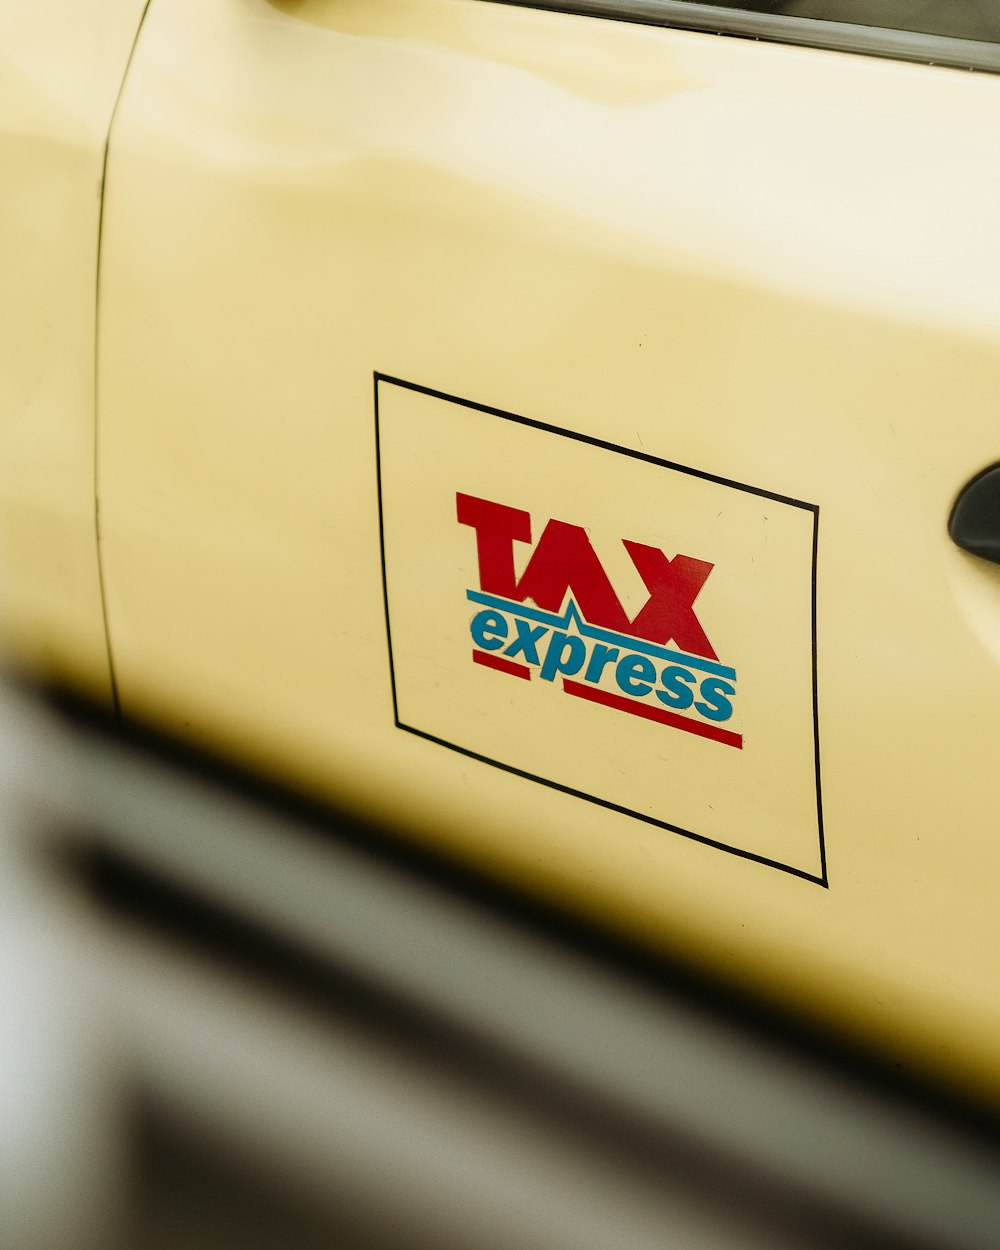 a close up of a tax express sticker on a car